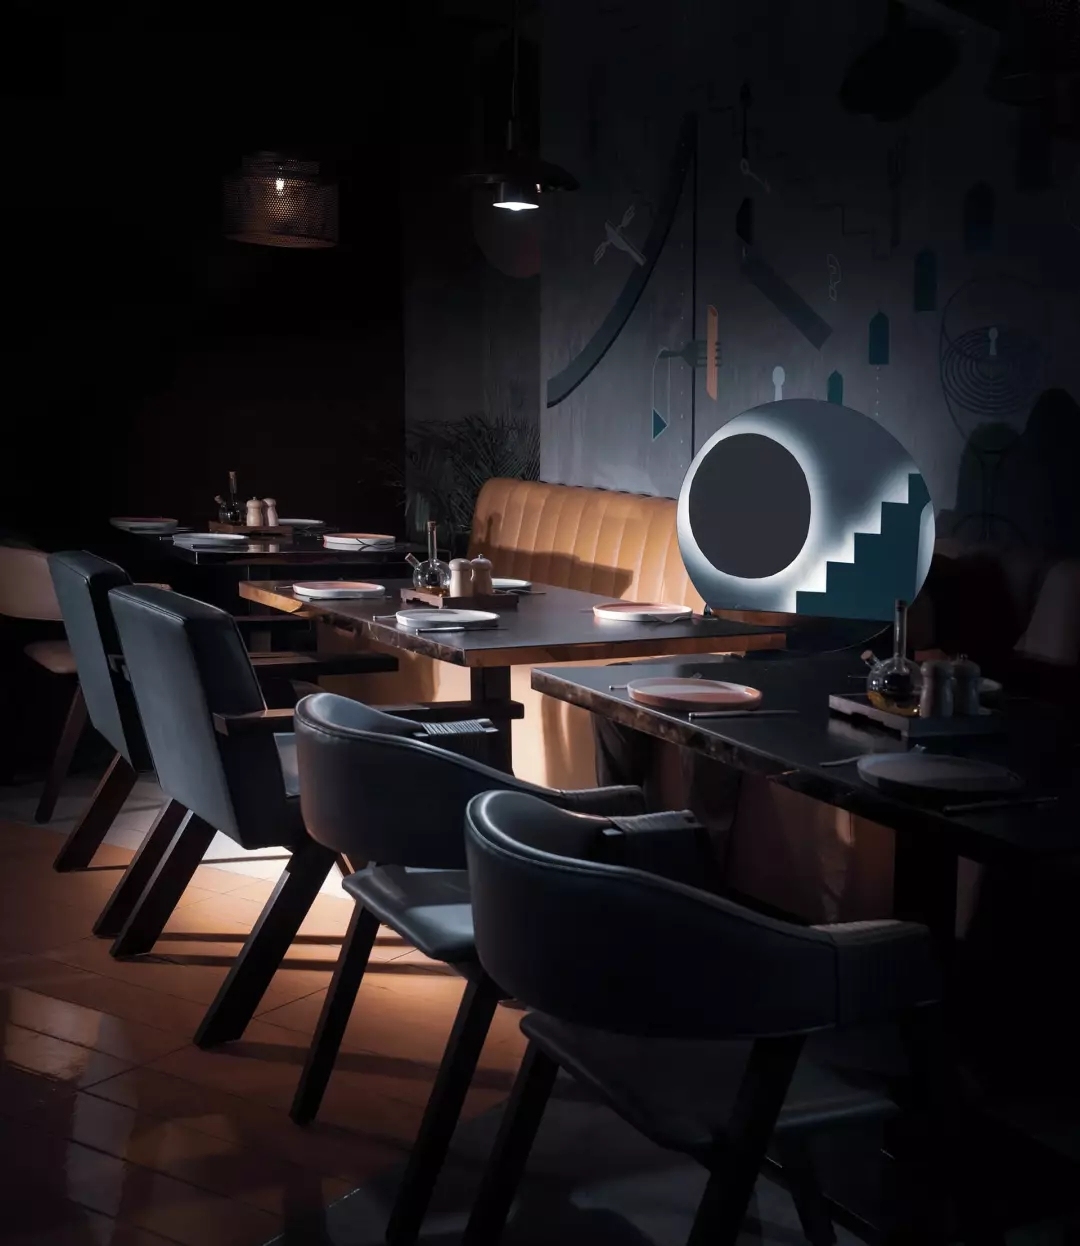 游戲主題酒吧餐廳，不僅空間設計獨特而且趣味性十足